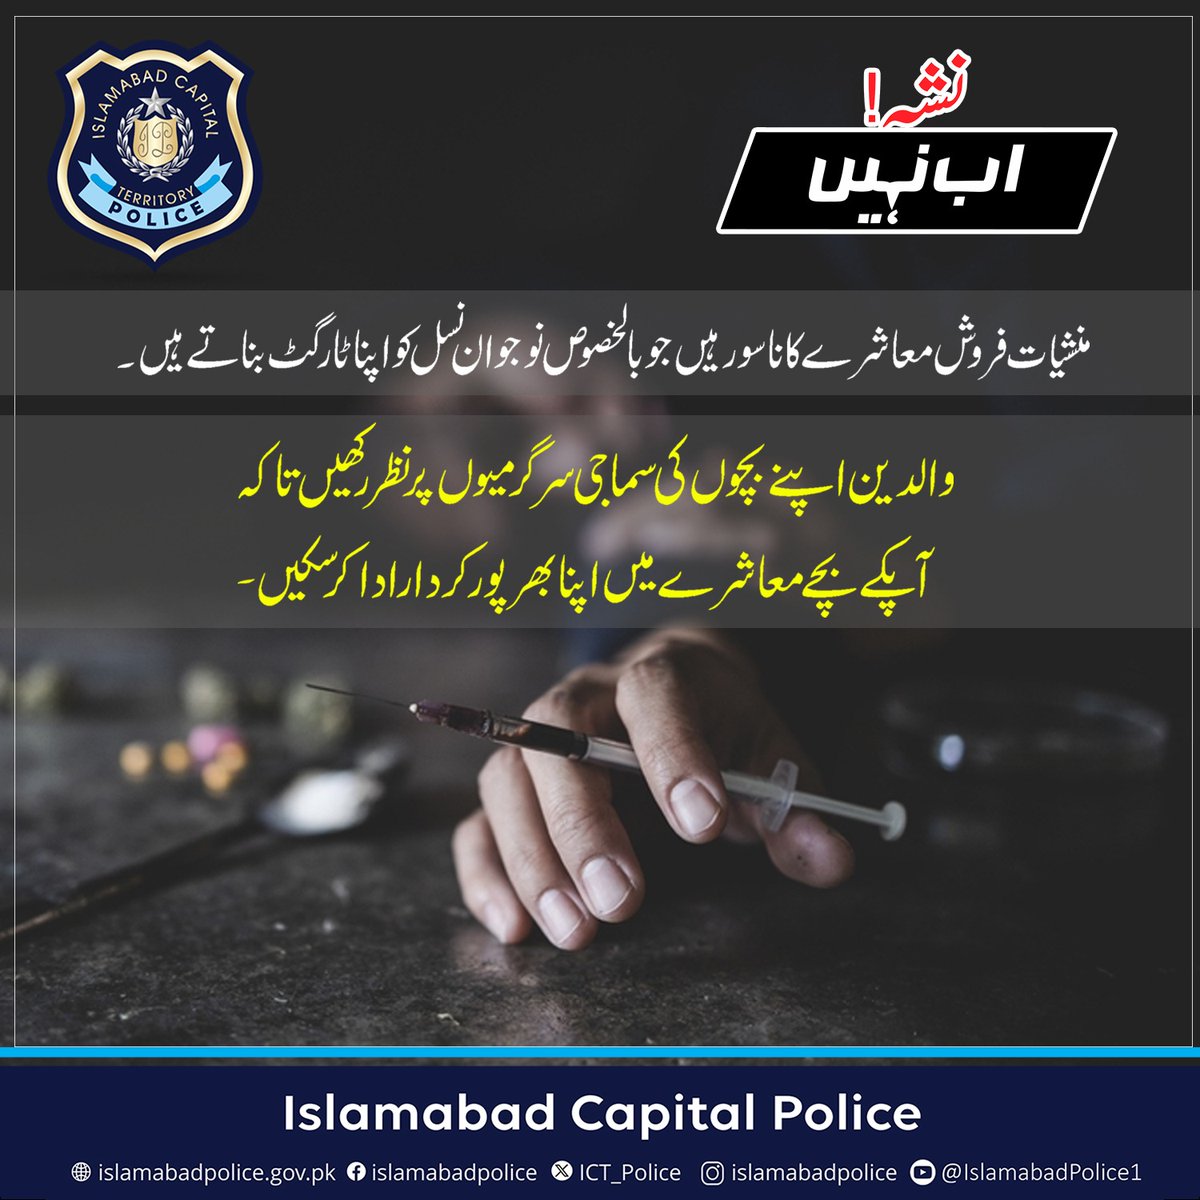 نشے کے بڑھتے ہوئے استعمال کو روکیں، نوجوان نسل میں آگاہی پھیلائیں، خود بھی بچیں اور دوسروں کو بھی بچائیں، اپنی پولیس کا ساتھ دیں، کیونکہ *نشہ اب نہیں* #ICTP #IslamabadaPolice #Nasha_Ab_Nahi